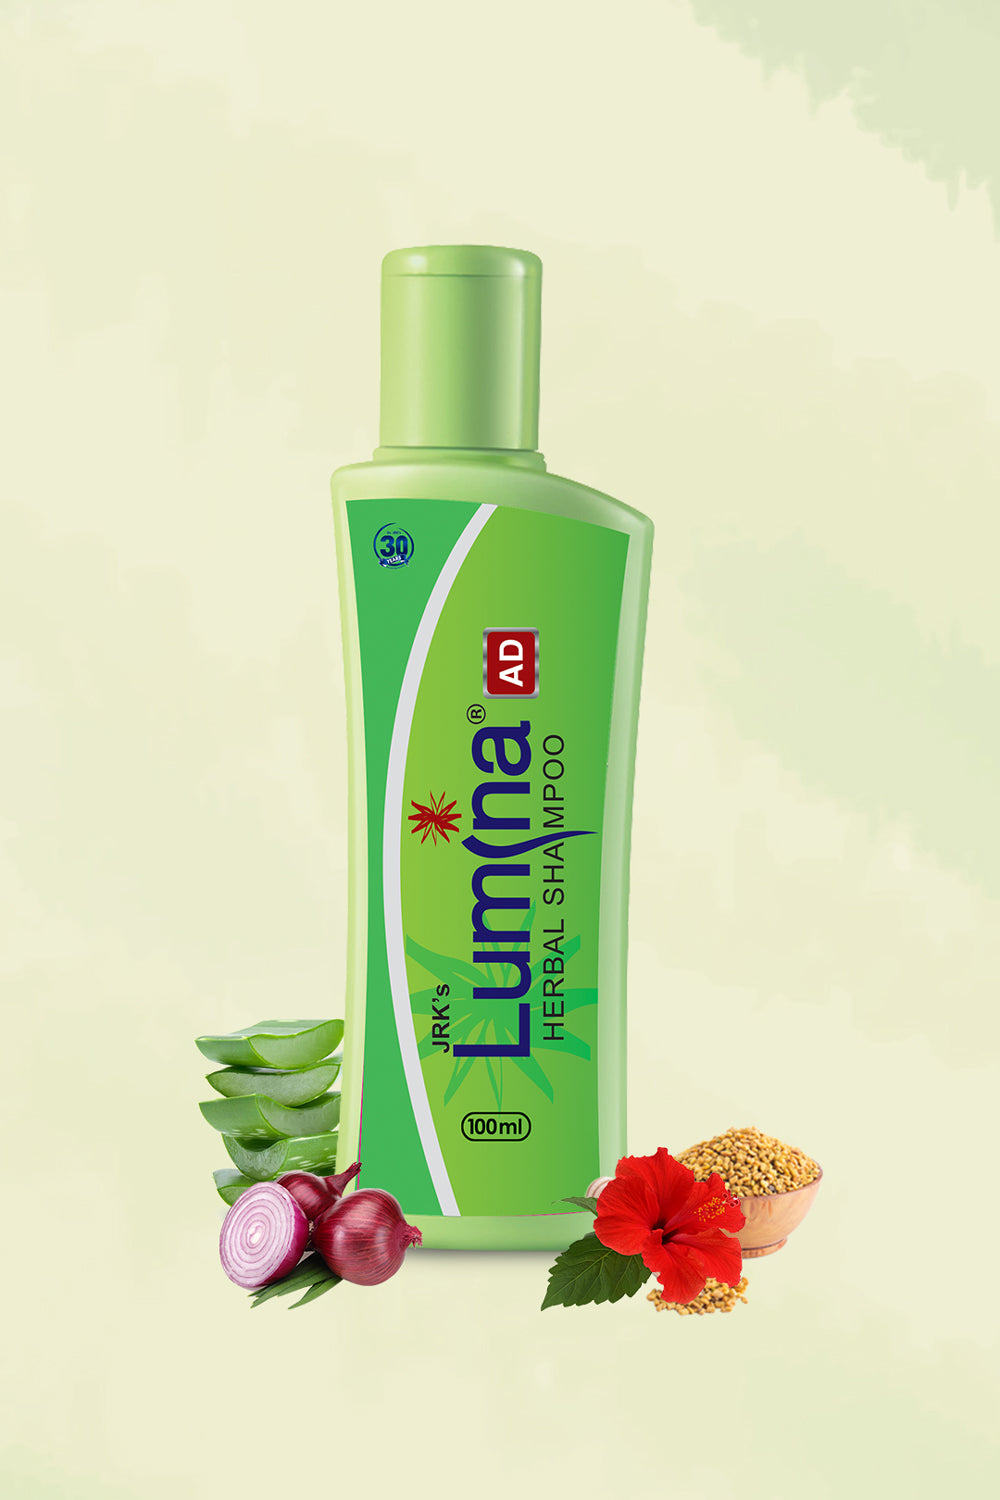 Lumina AD Herbal shampoo |Dandruff and scalp psoriasis